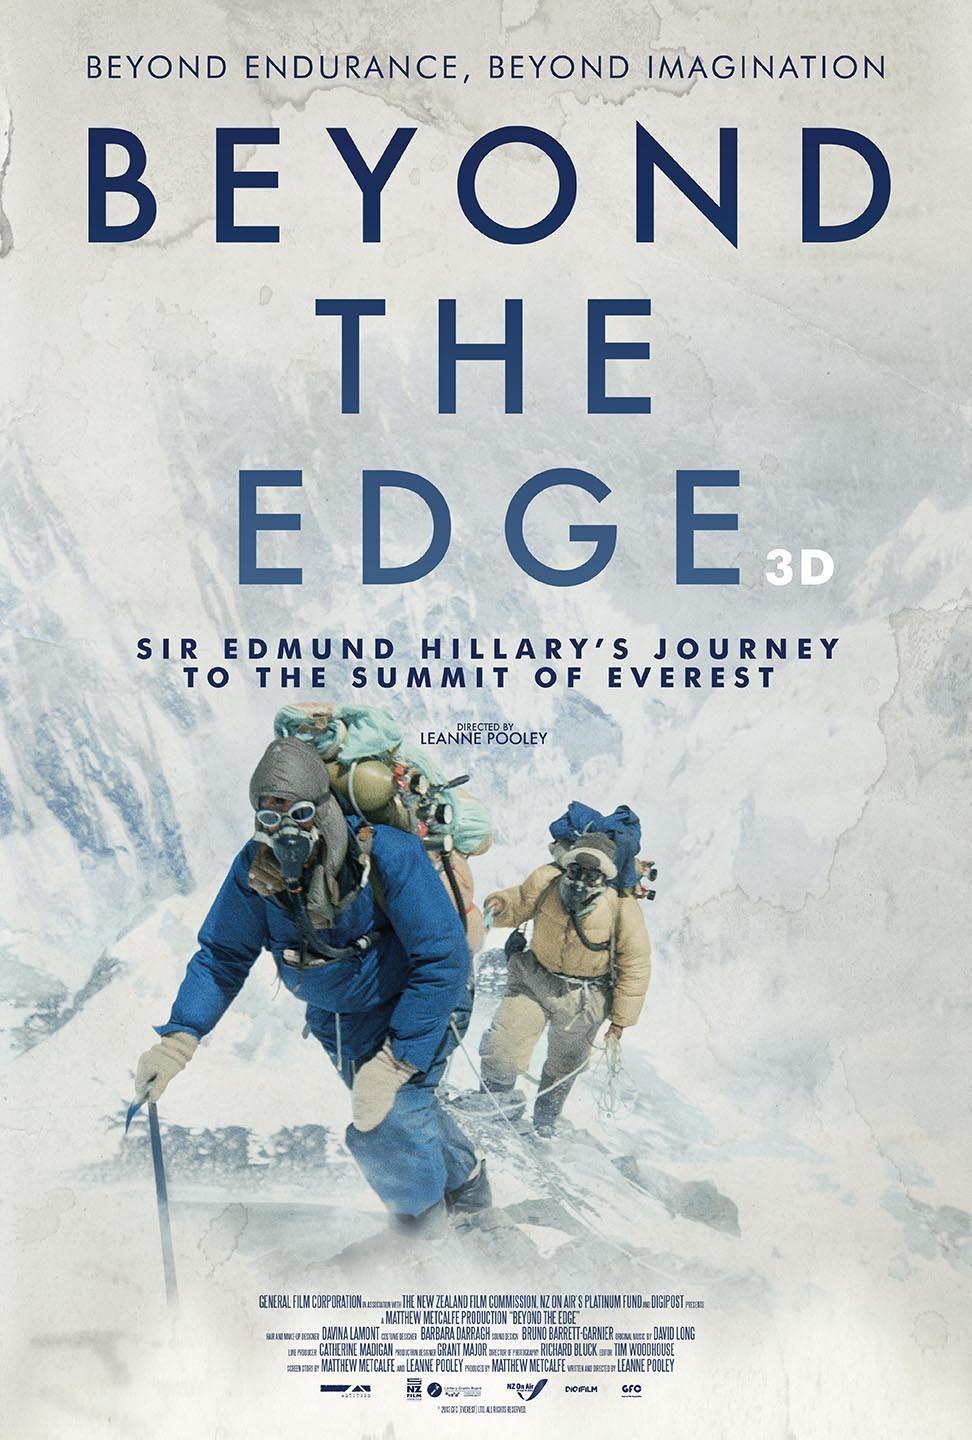 Постер фильма Эверест. Достигая невозможного 3D | Beyond the Edge